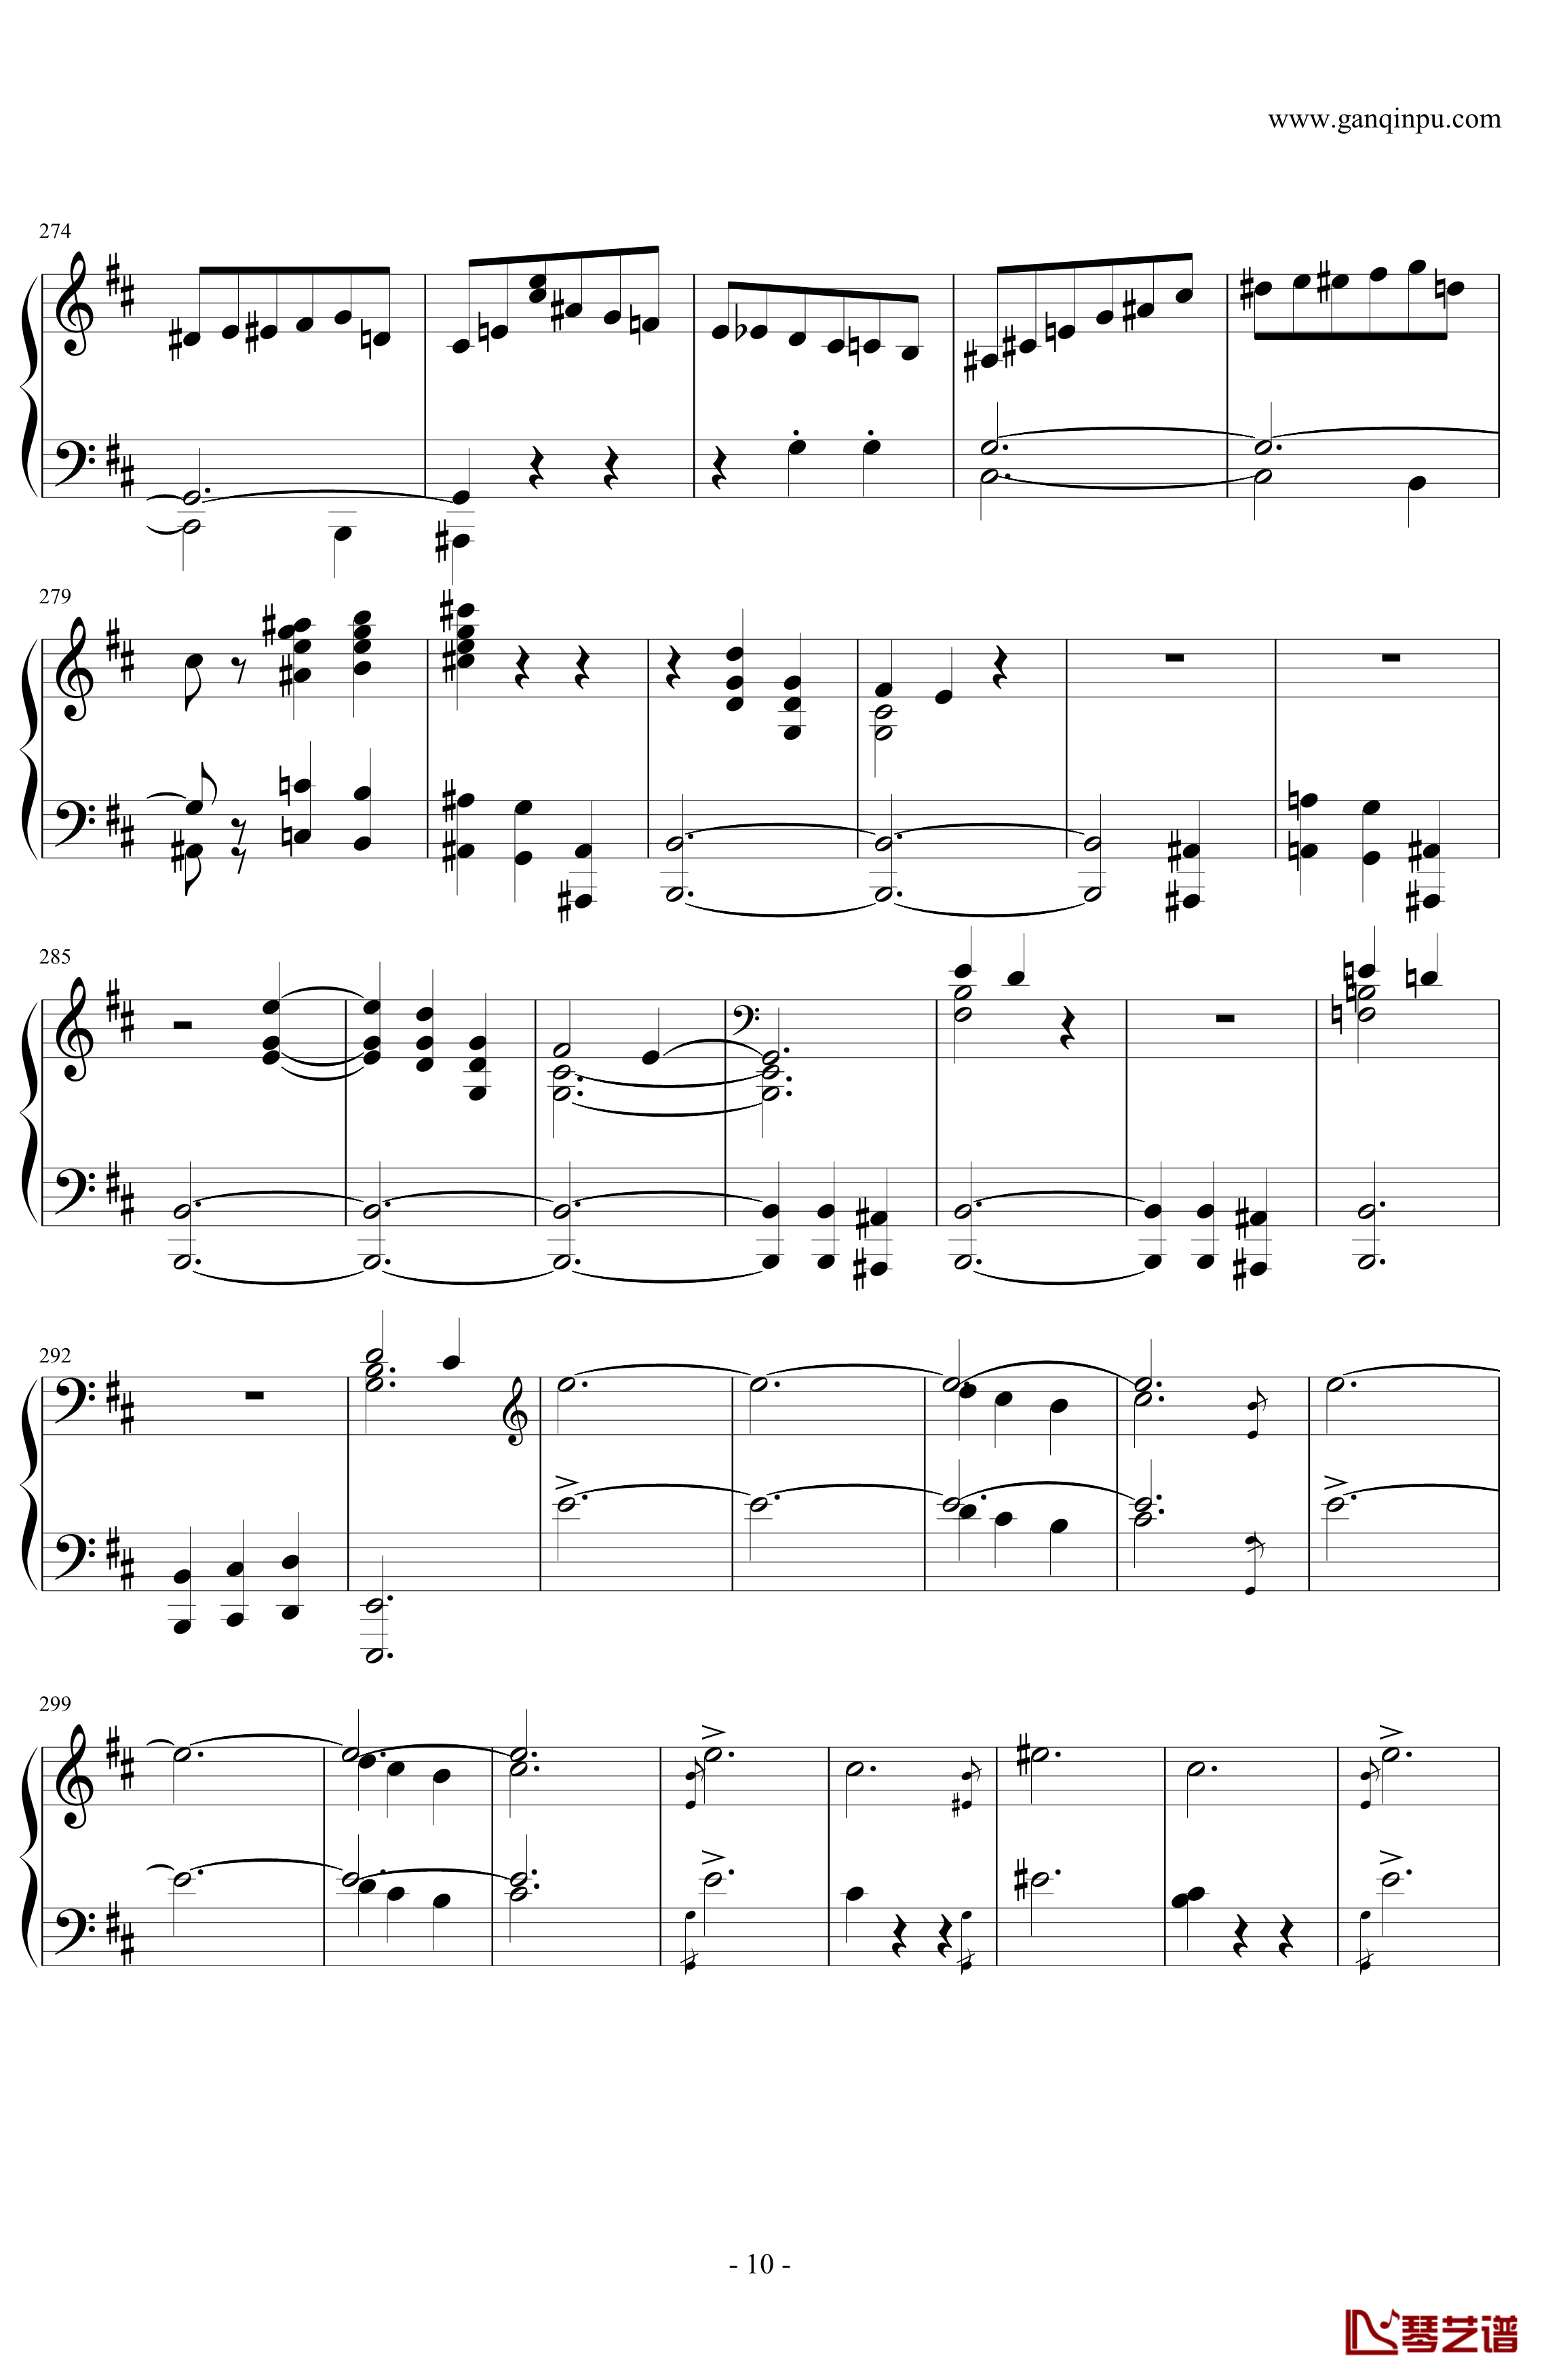 肖邦第一谐谑曲钢琴谱-肖邦-chopin10